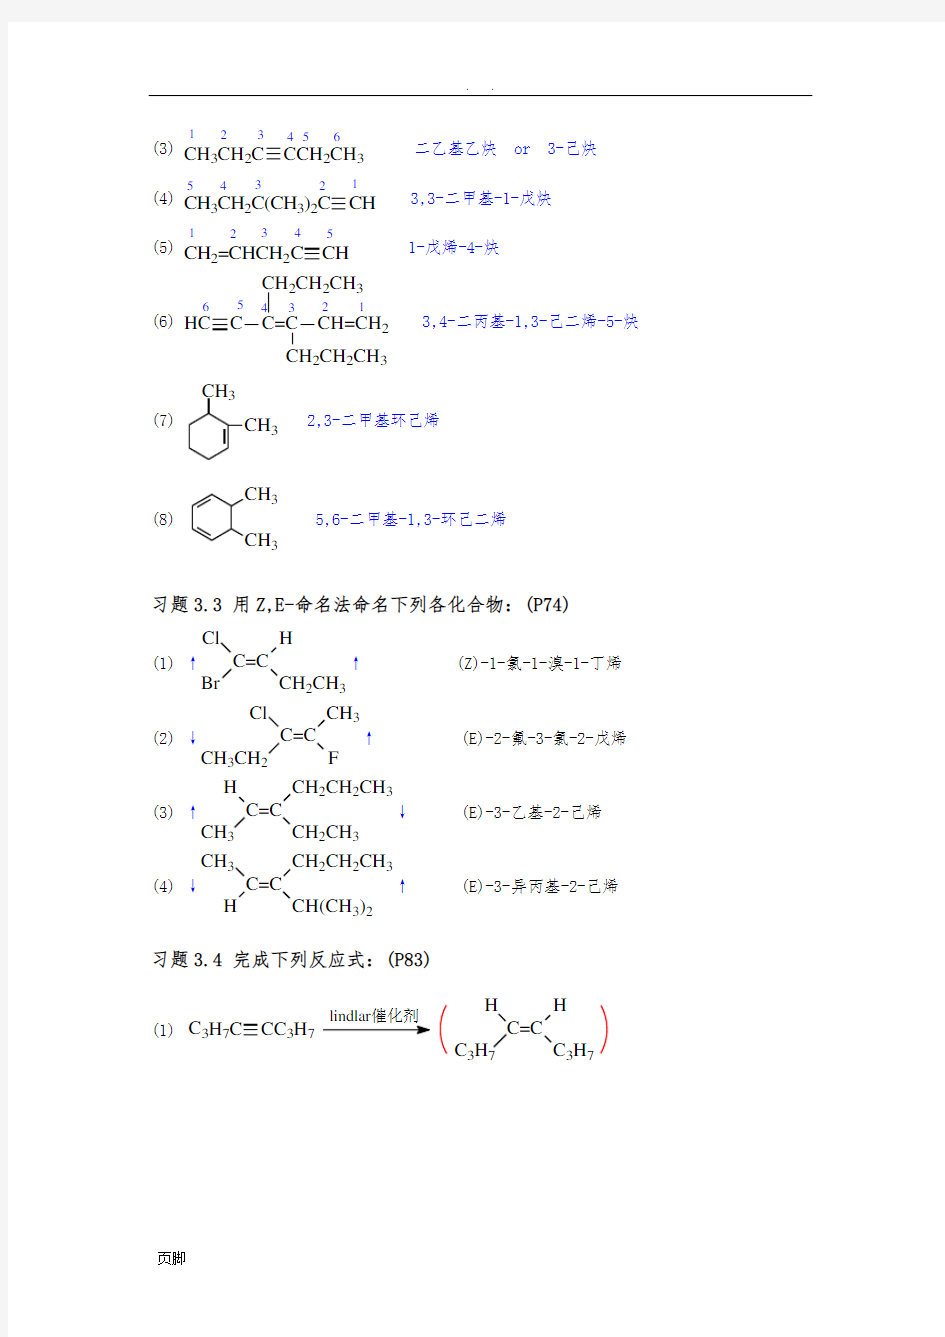 《有机化学》(第四版)第三章-不饱和烃(习题答案)